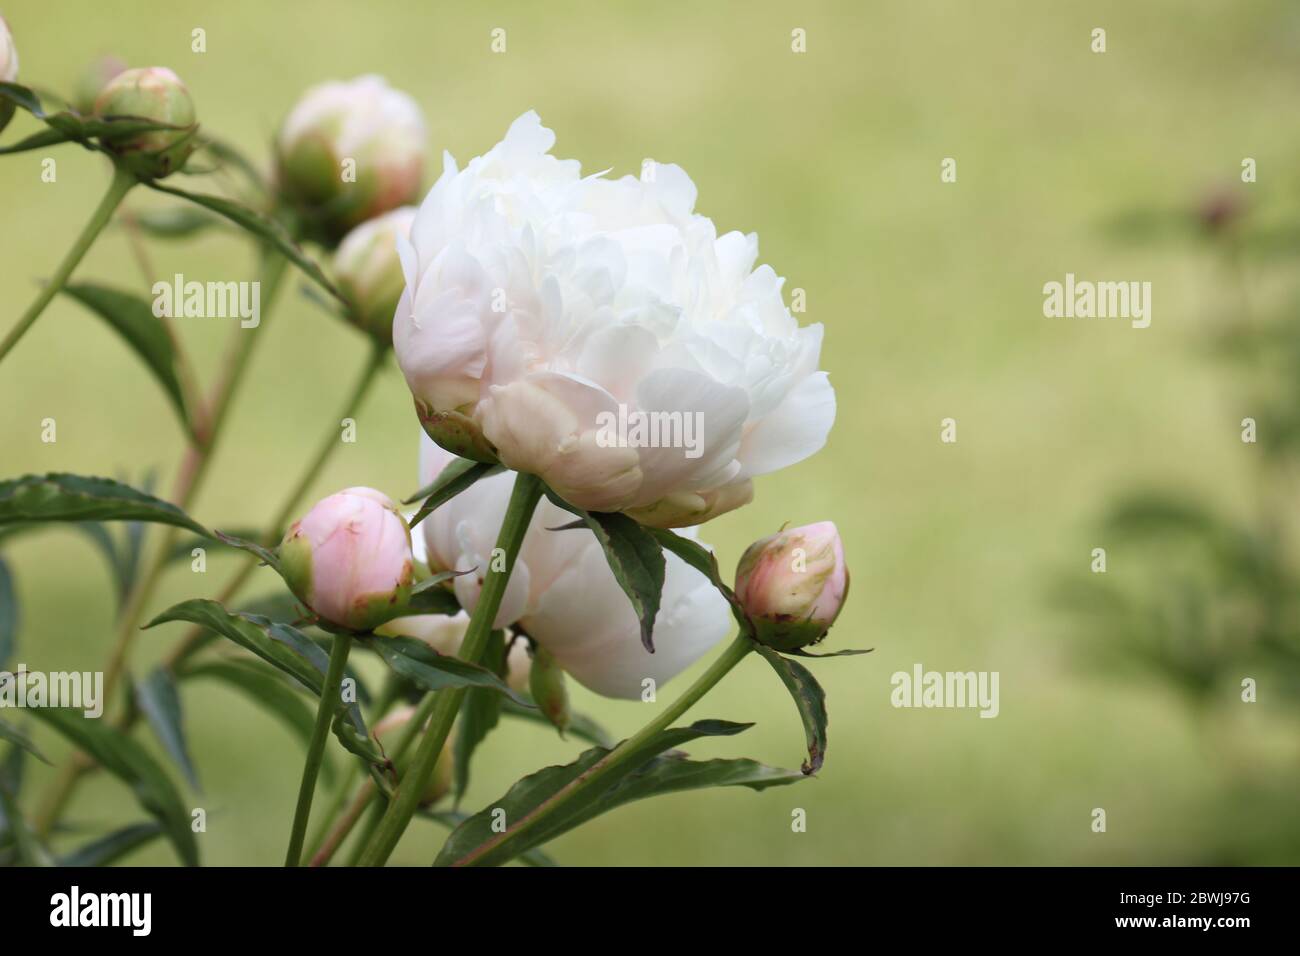 Fleurs de pivoine blanche et boutons blancs, symbole de richesse et de bonne chance dans la culture chinoise. Banque D'Images